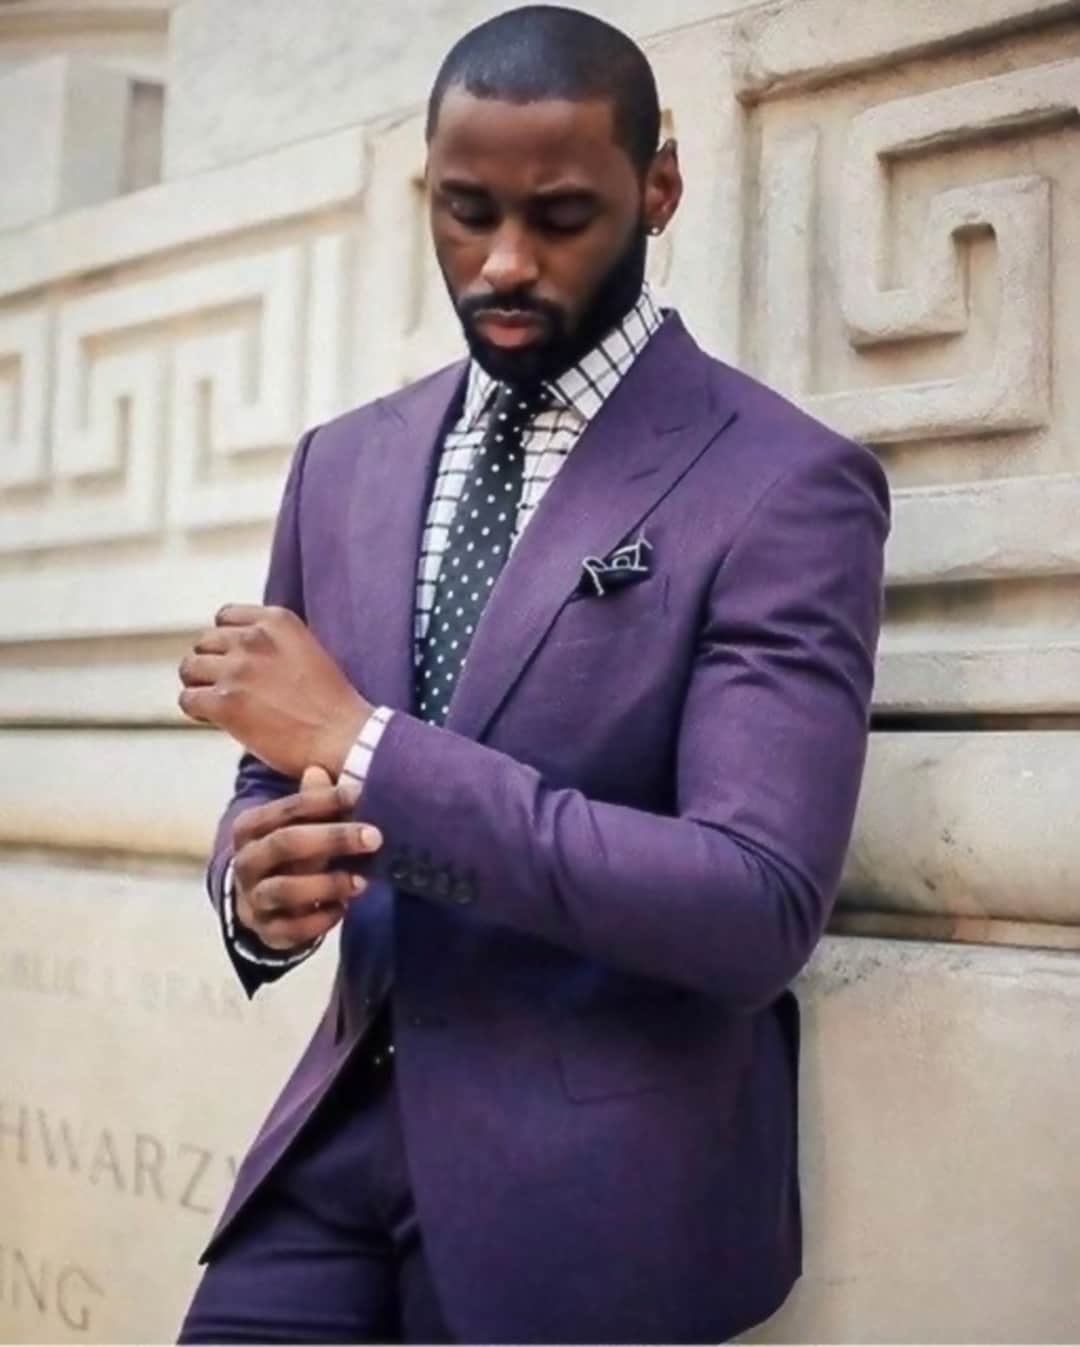 Menista Suit Classy Two Piece Purple Mens Suit for Wedding, Engagement ...